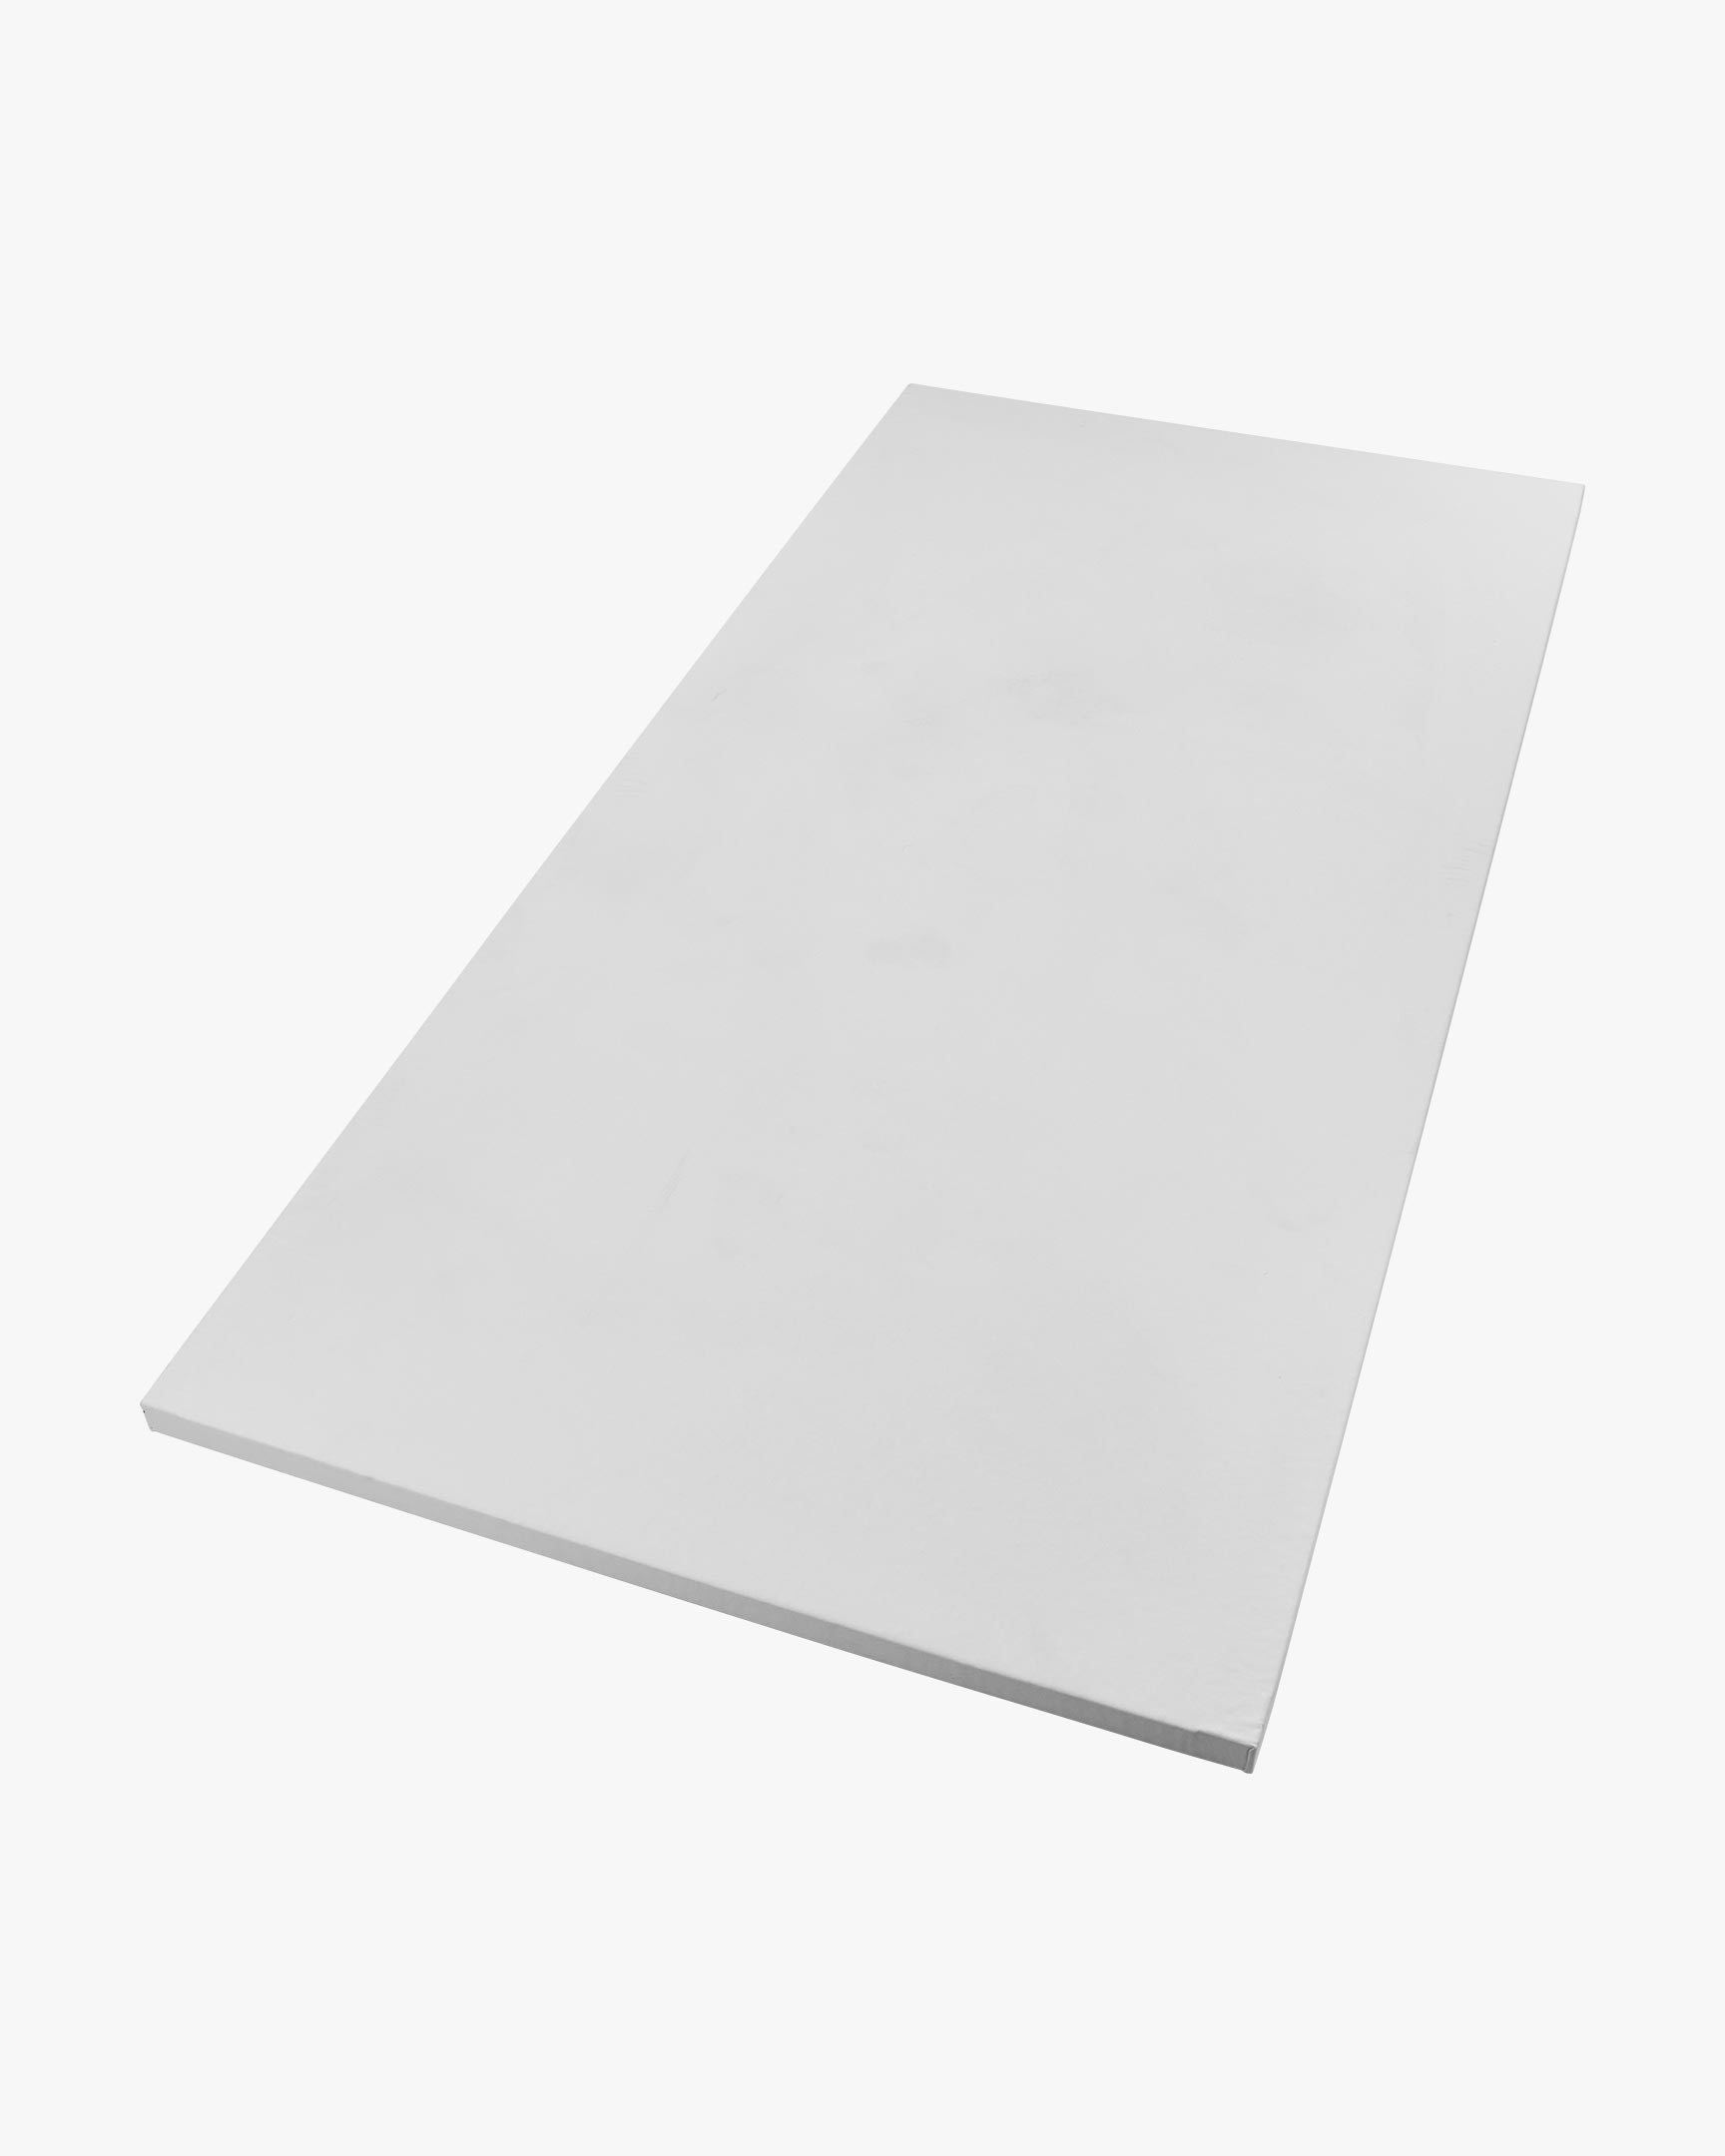 Smooth Tile Mat - 1m x 2m 1.5" White